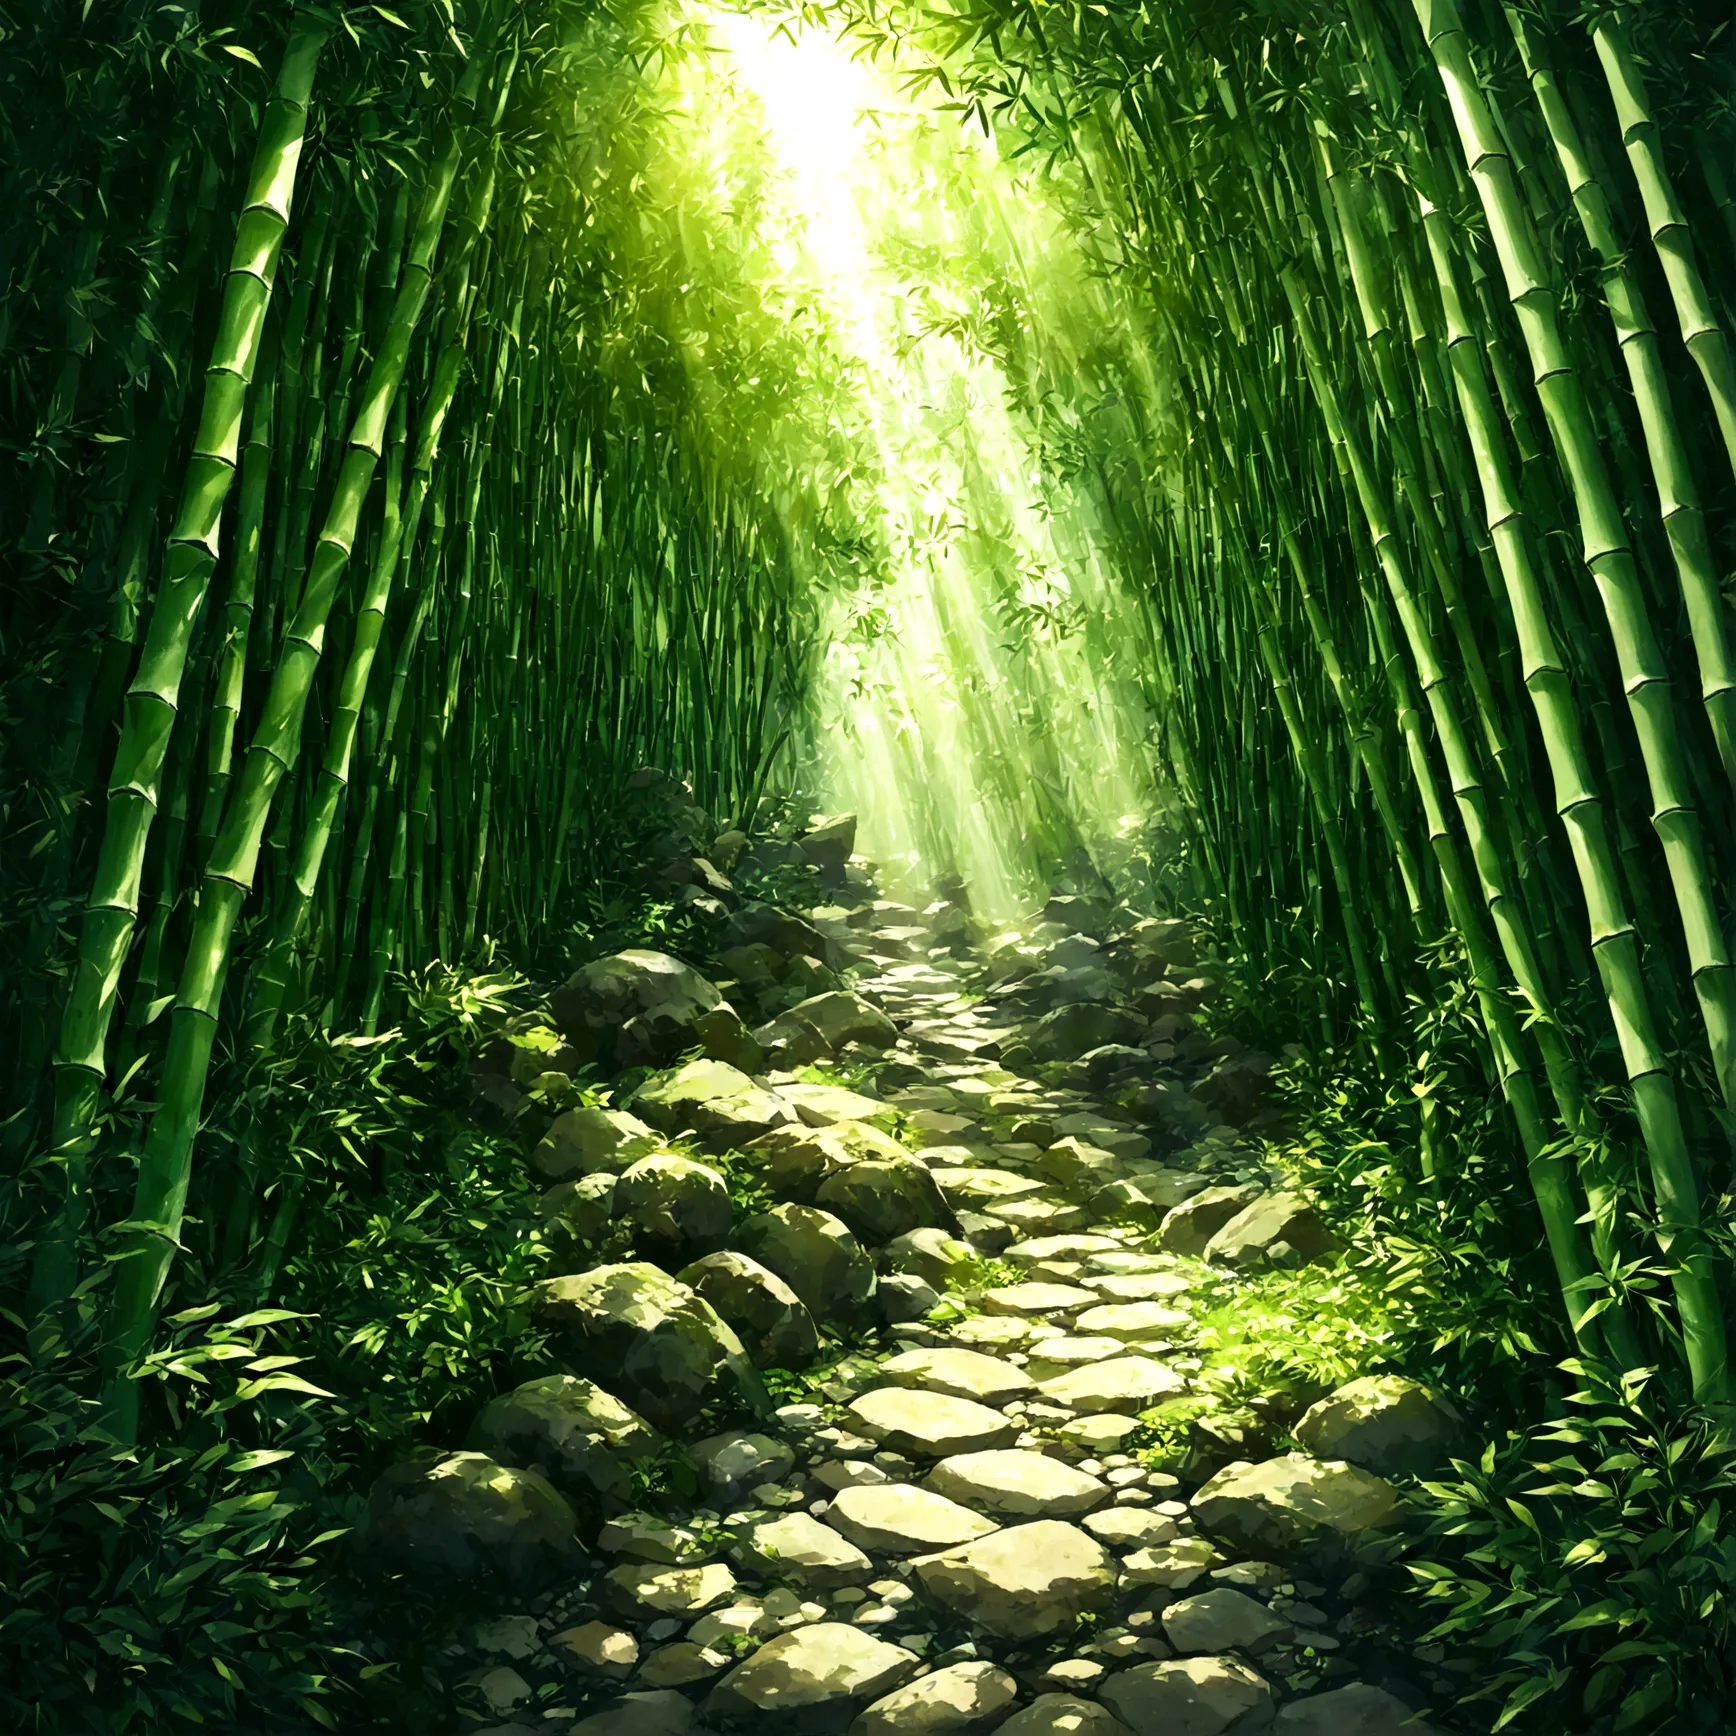 深く沈み込むようなSilenceに支配された、薄暗く湿ったbamboo林のDungeons。空高くそびえるbambooの隙間から、A little bit of light shines in、In the ground、不規則な形のShadowが長く伸び...